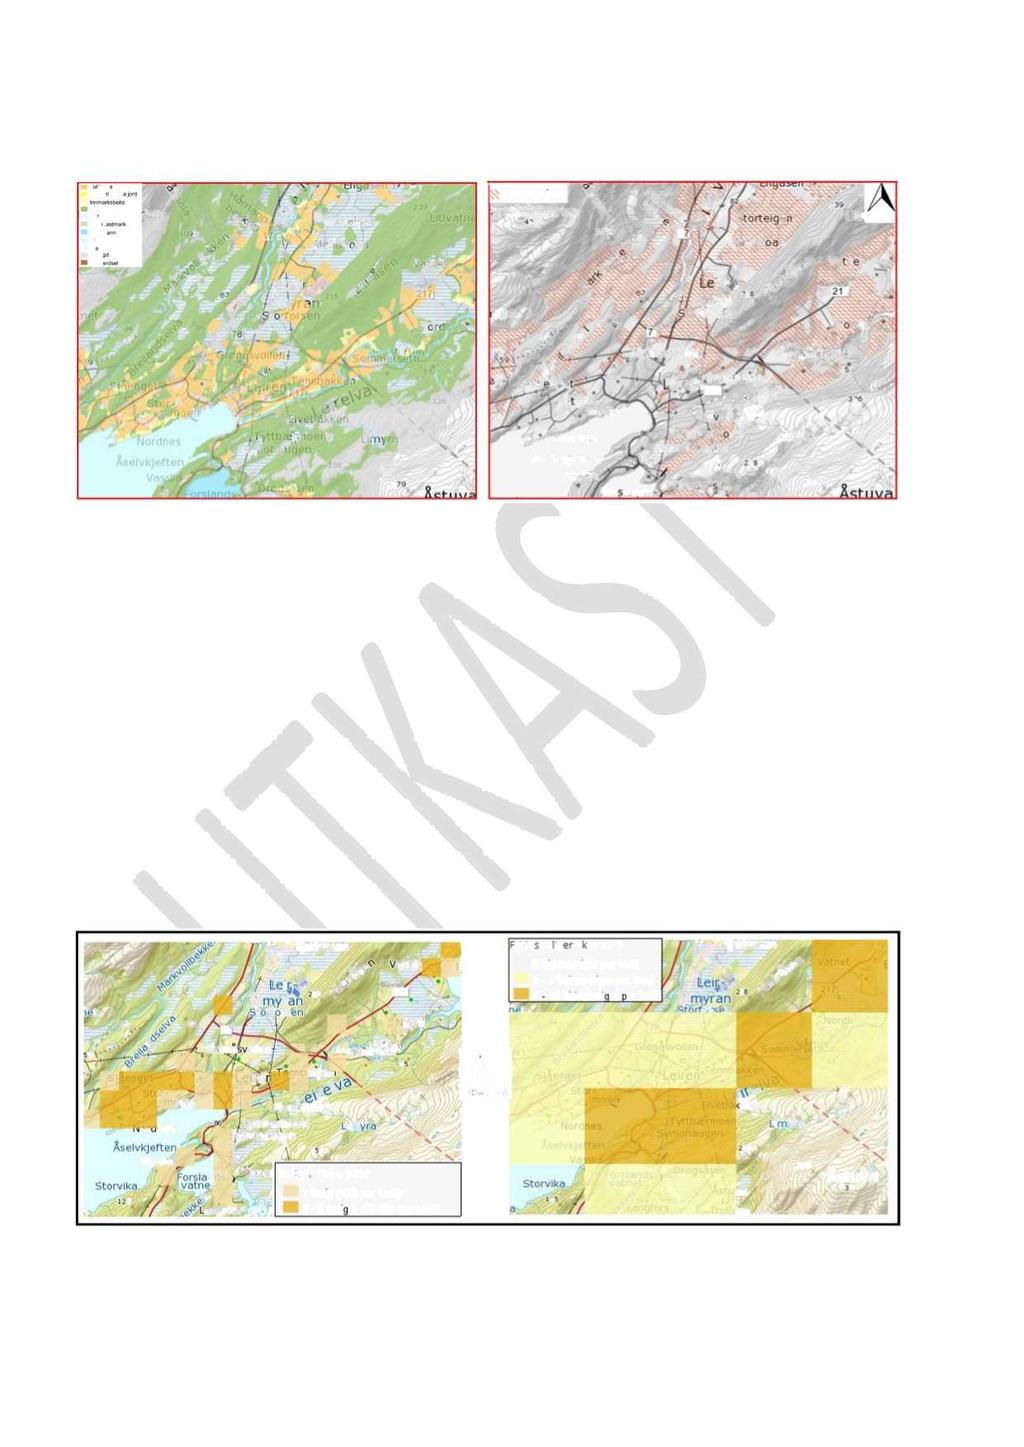 Oversikt arealtype og dyrkbar jord : Fig. 5 Oversikt av areal typ og disponibel dyrkbar jord Utsnitt av kart viser i grove trekk en oversikt av arealtype (AR5) og dyrkbar jord.